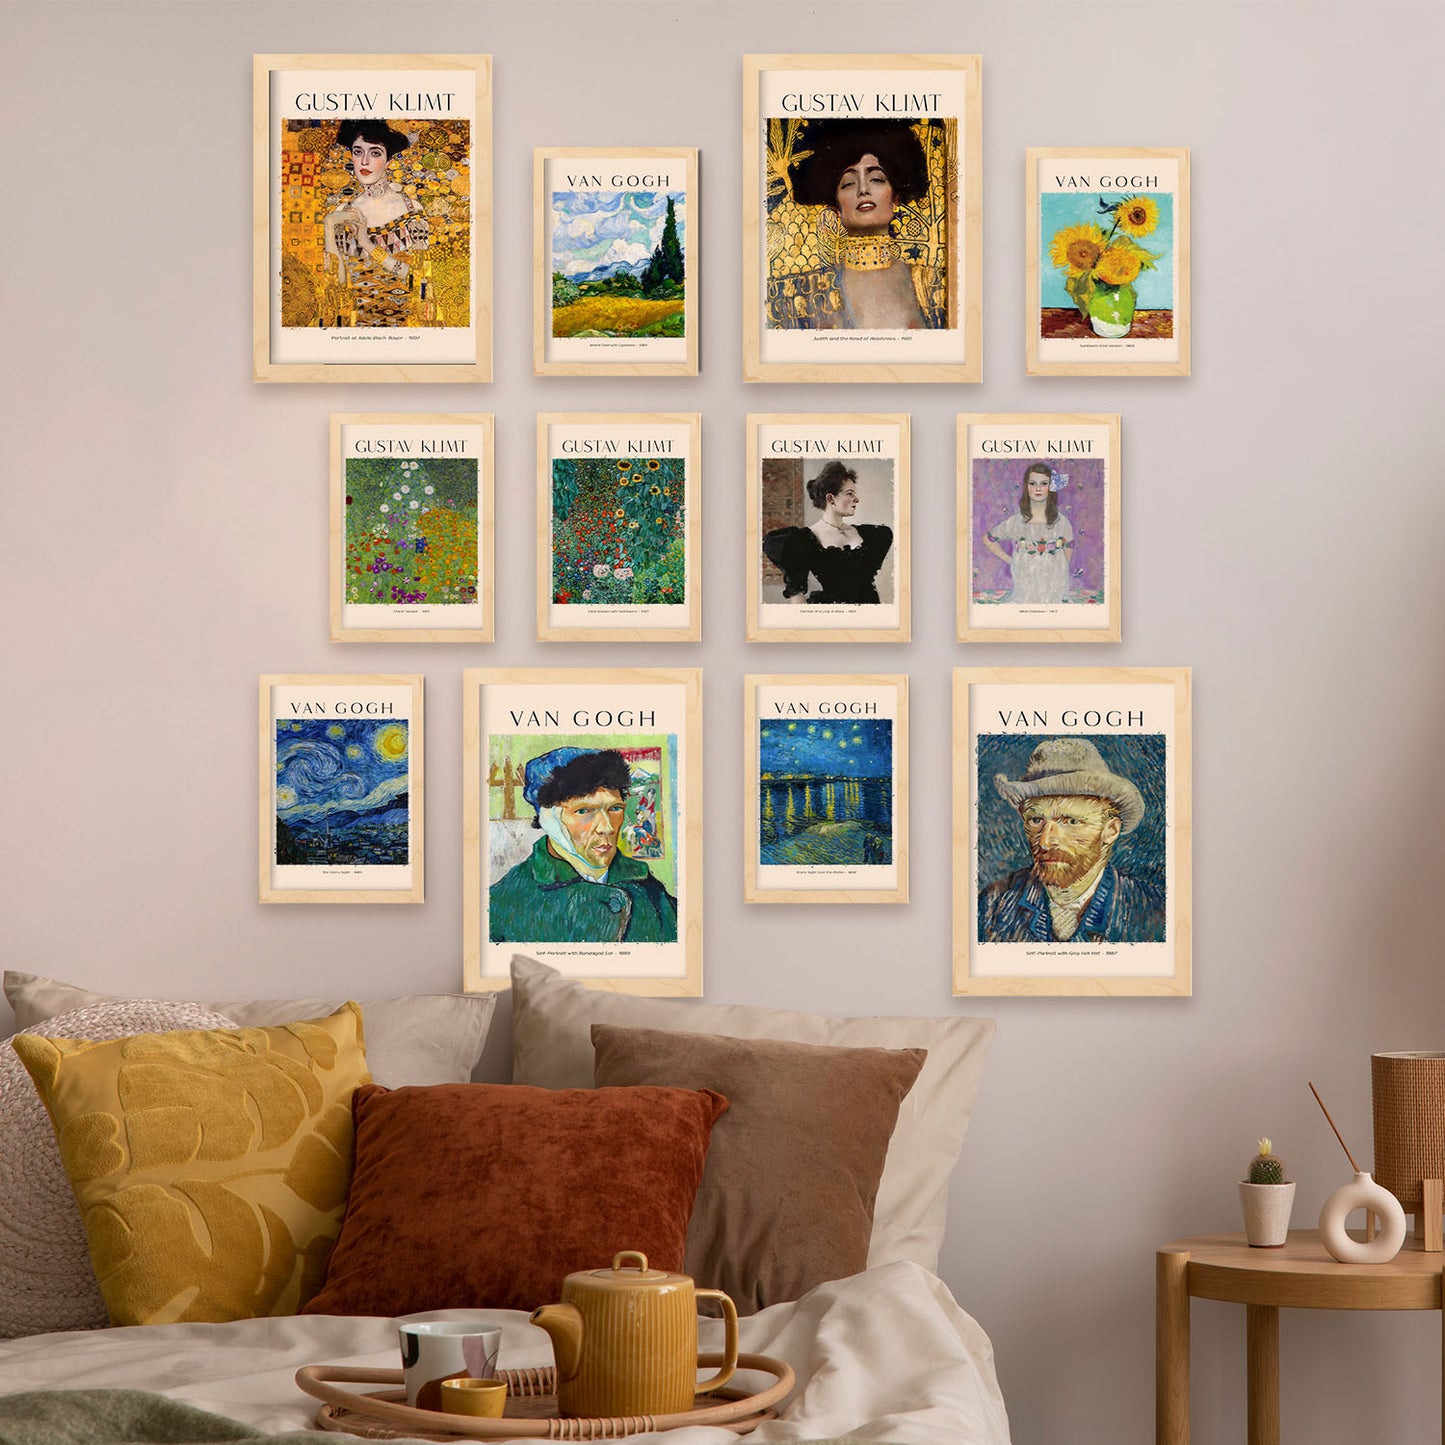 Conjunto de láminas de arte de Klimt y Van Gogh - 12 piezas, estilo de pintores famosos, colores vibrantes